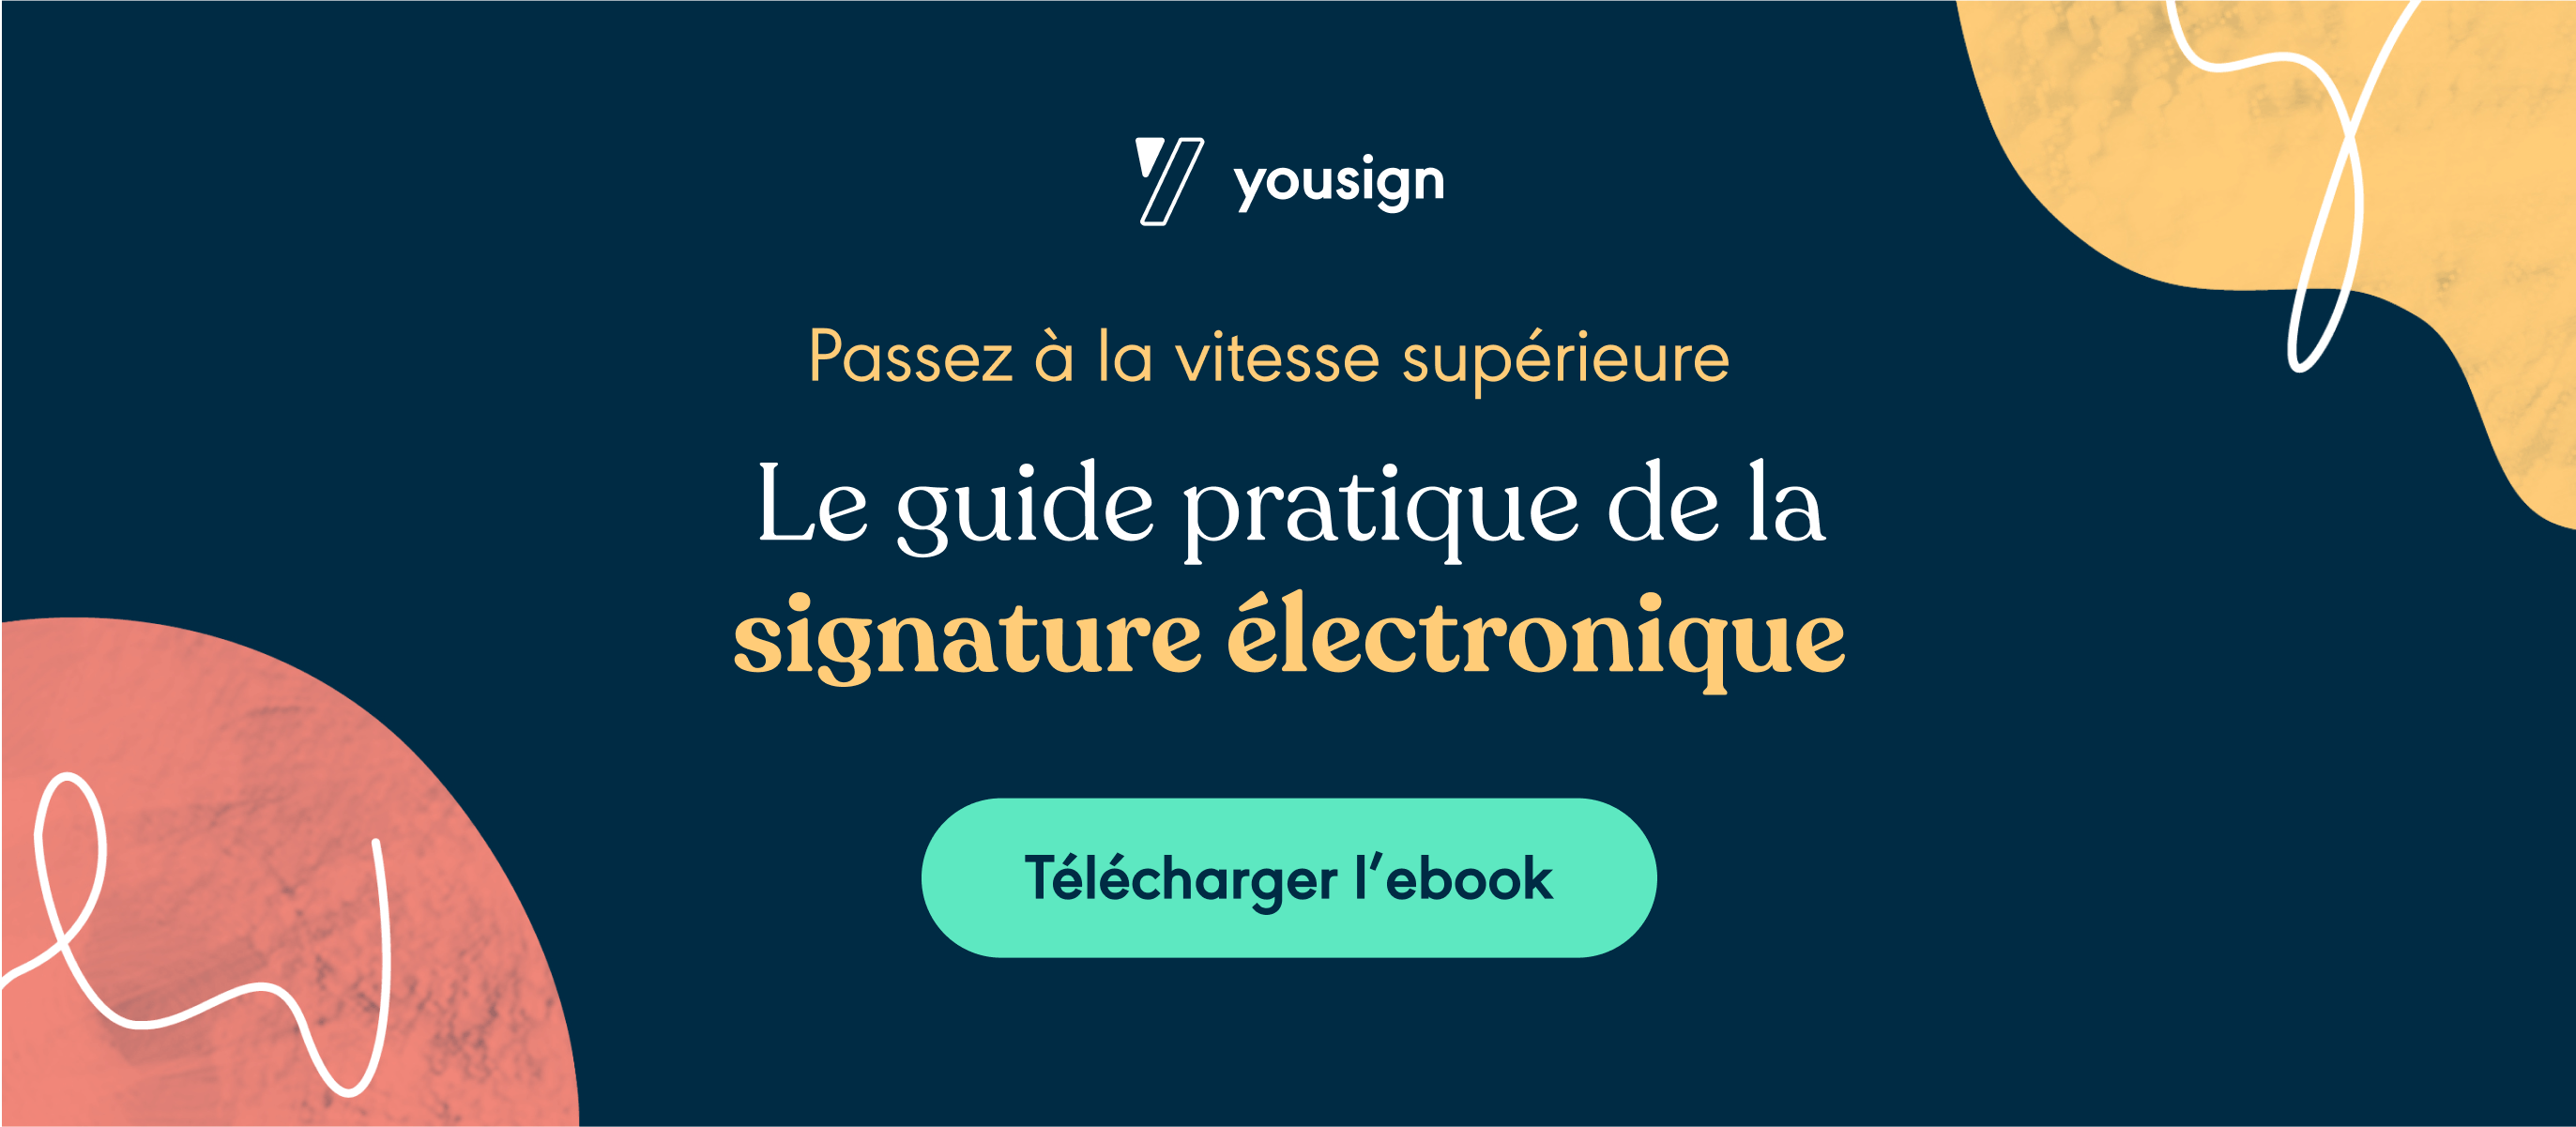 Guide pratique de la signature électronique